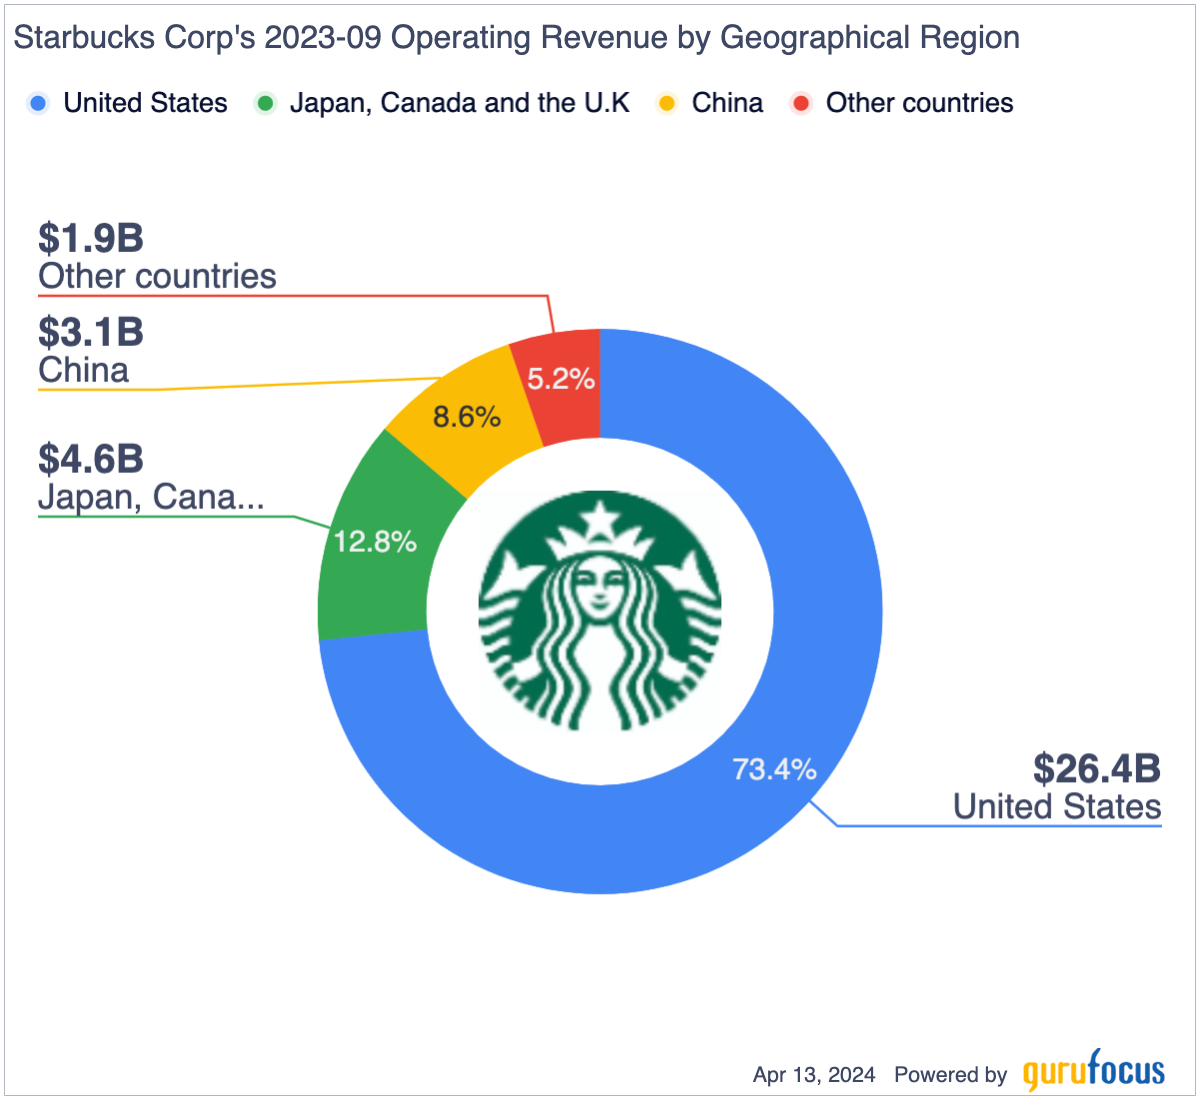 Is Starbucks Undervalued? - Yahoo Finance